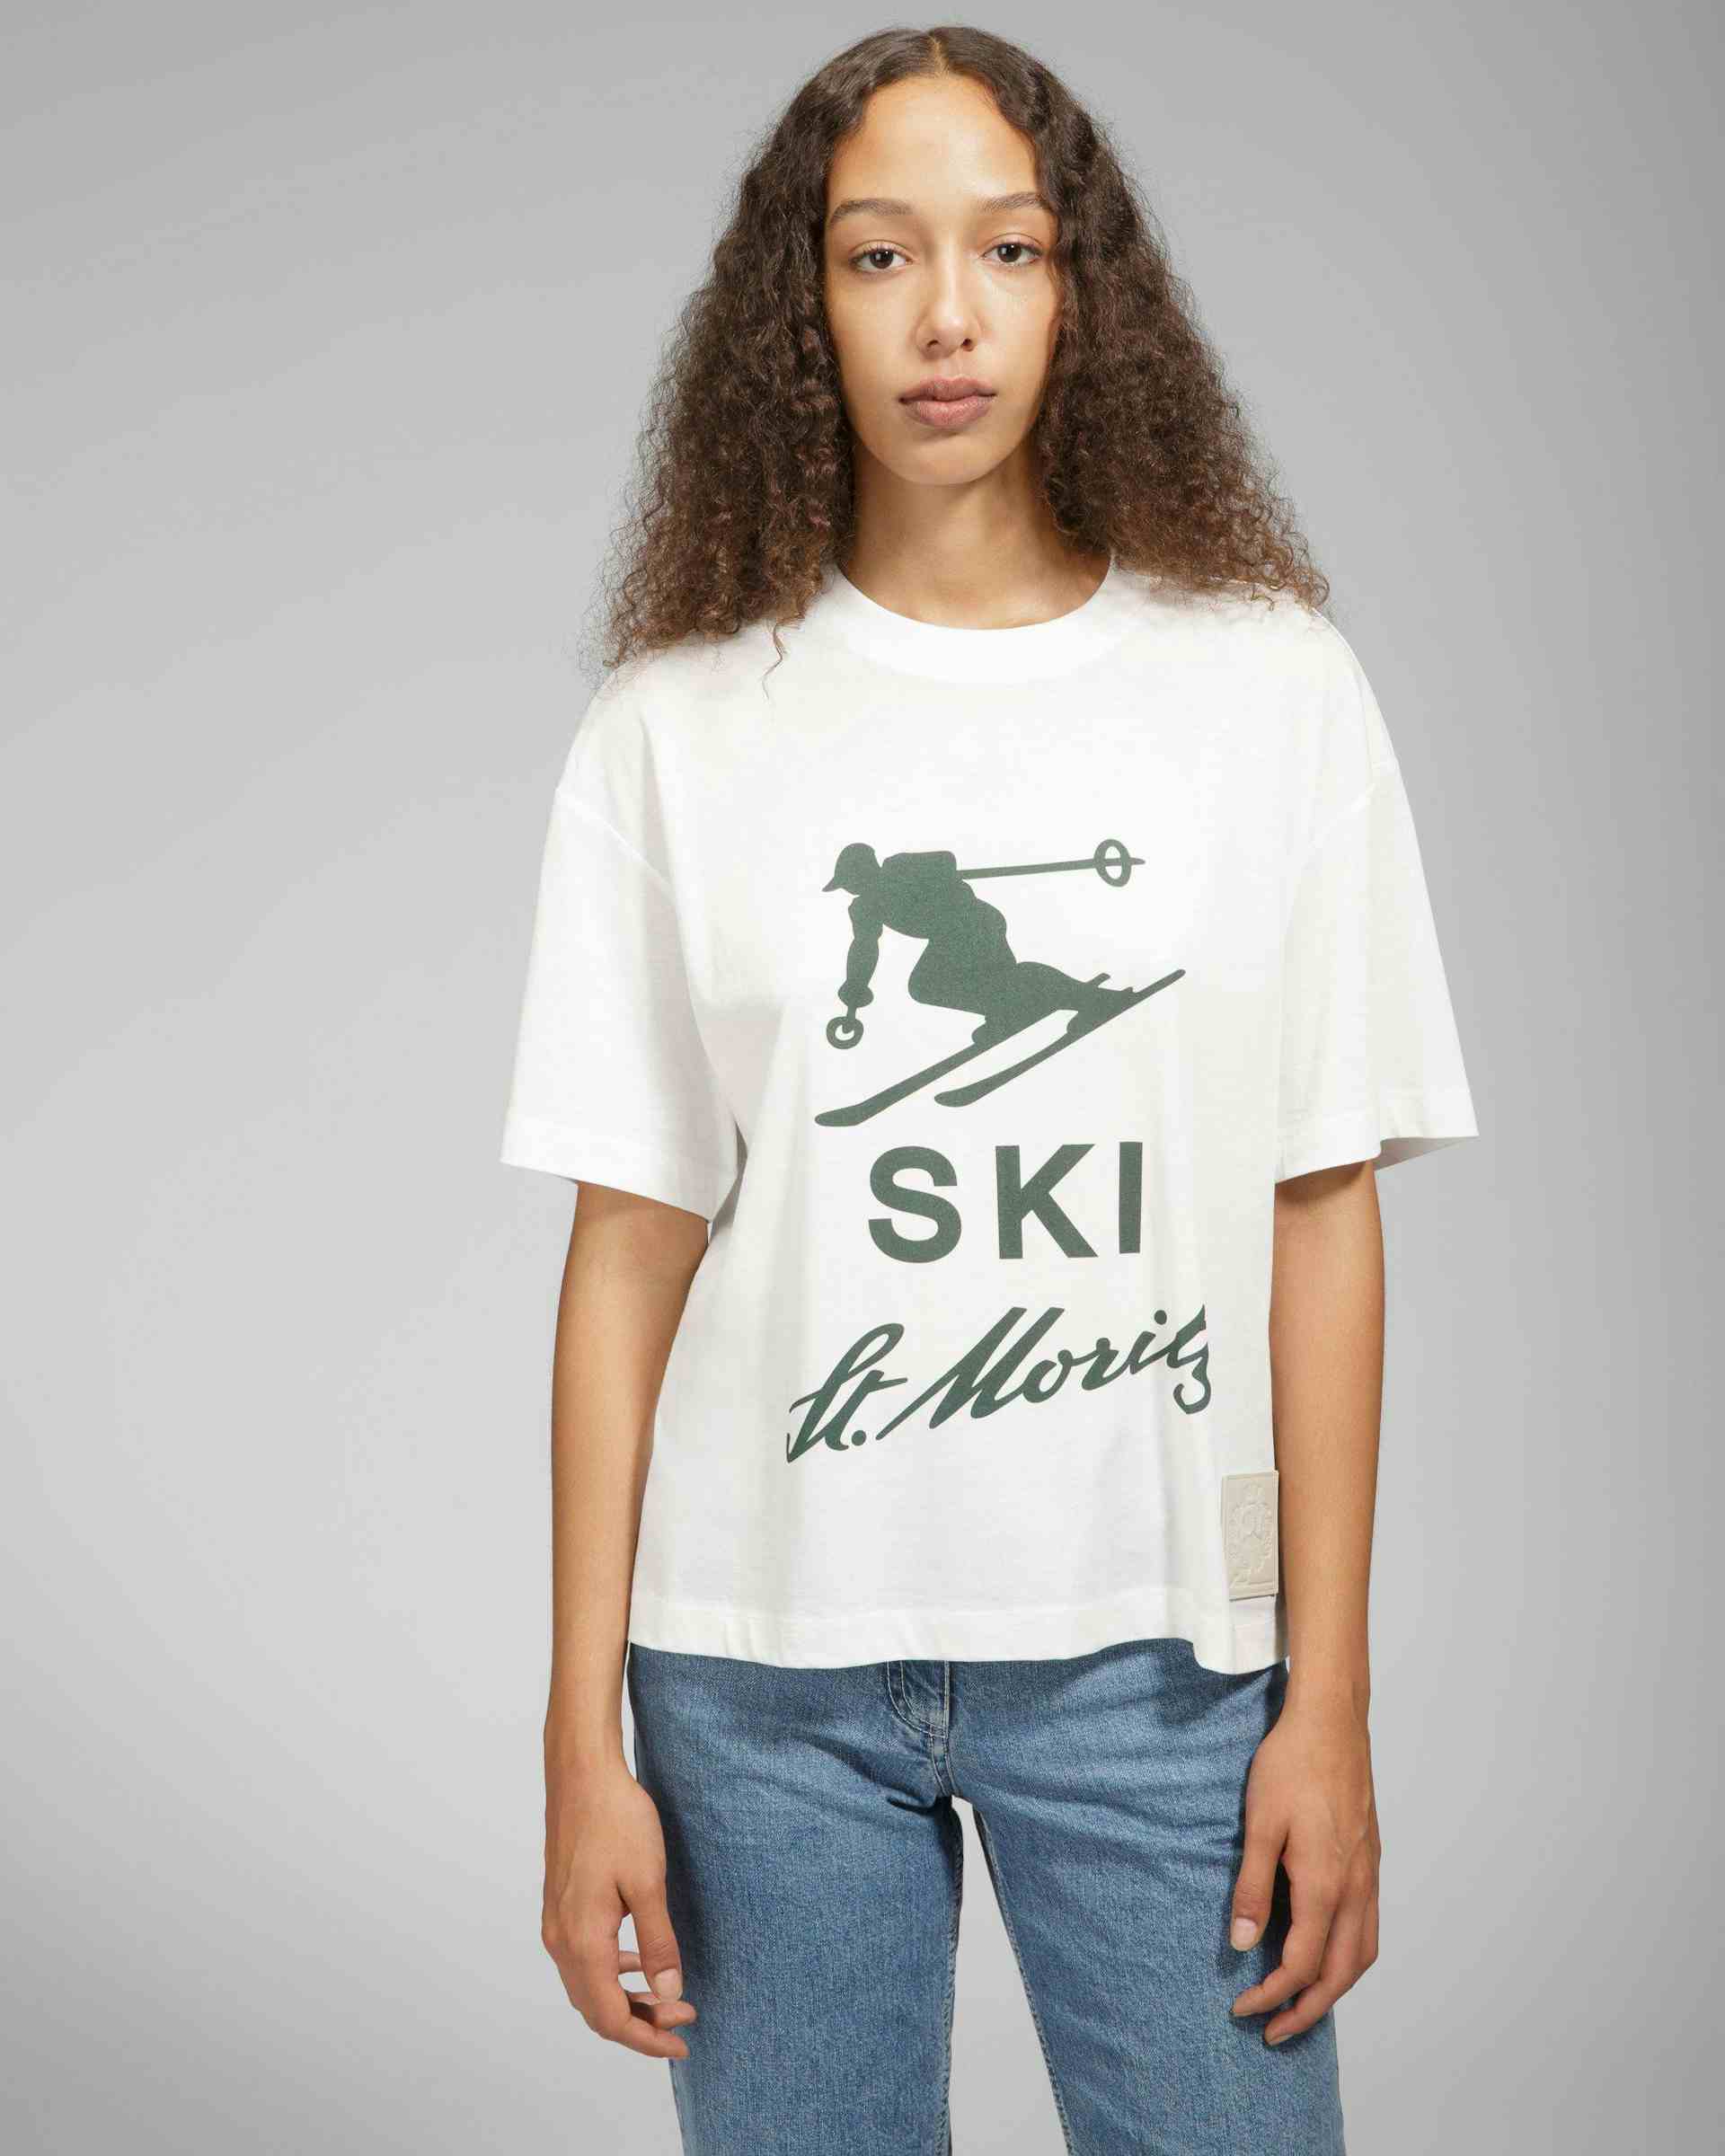 T-shirt Ski St Moritz - Homme - Bally